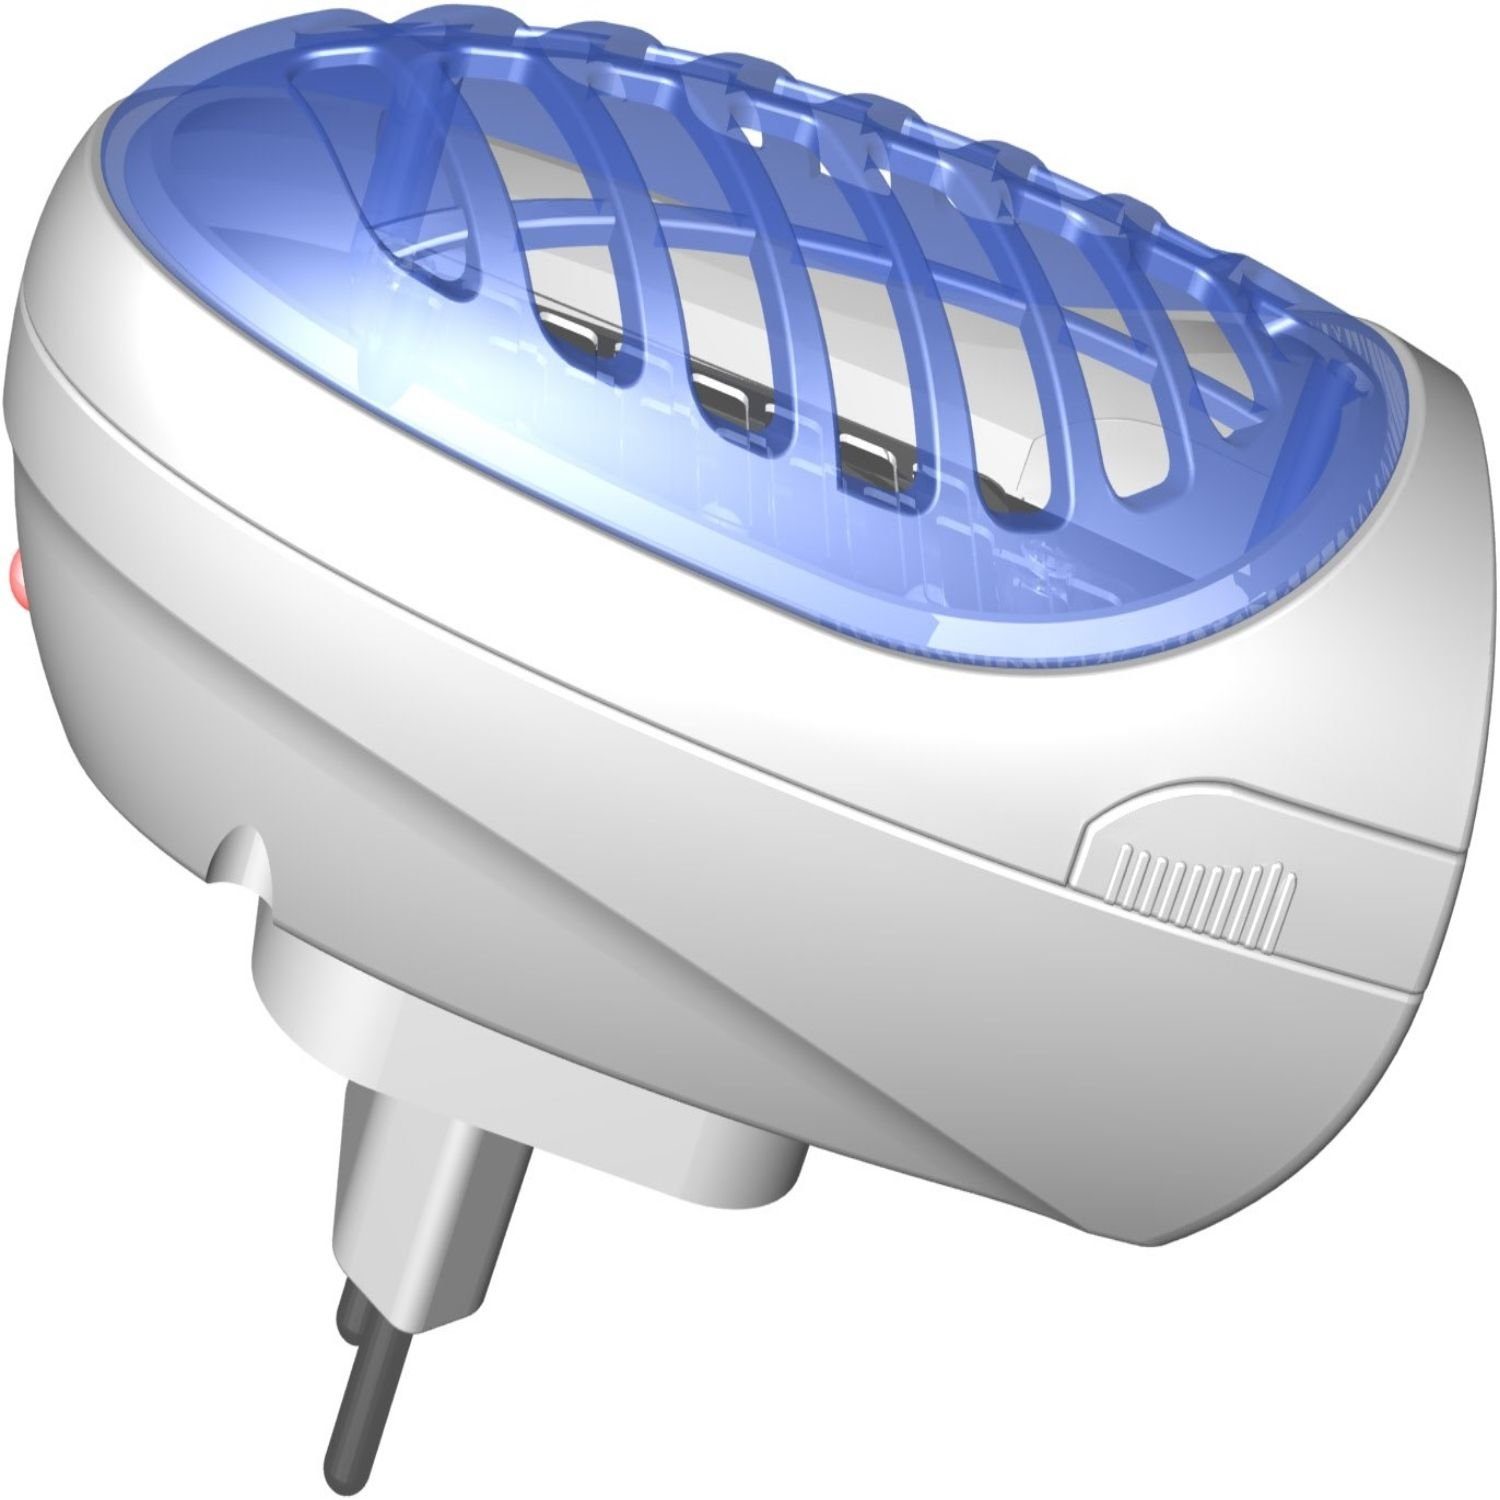 NABO Fliegenwedler IK 1010 Elektronische Insektenfalle (UV LED Lampe, bis zu 15m) | Insektenabwehrgeräte